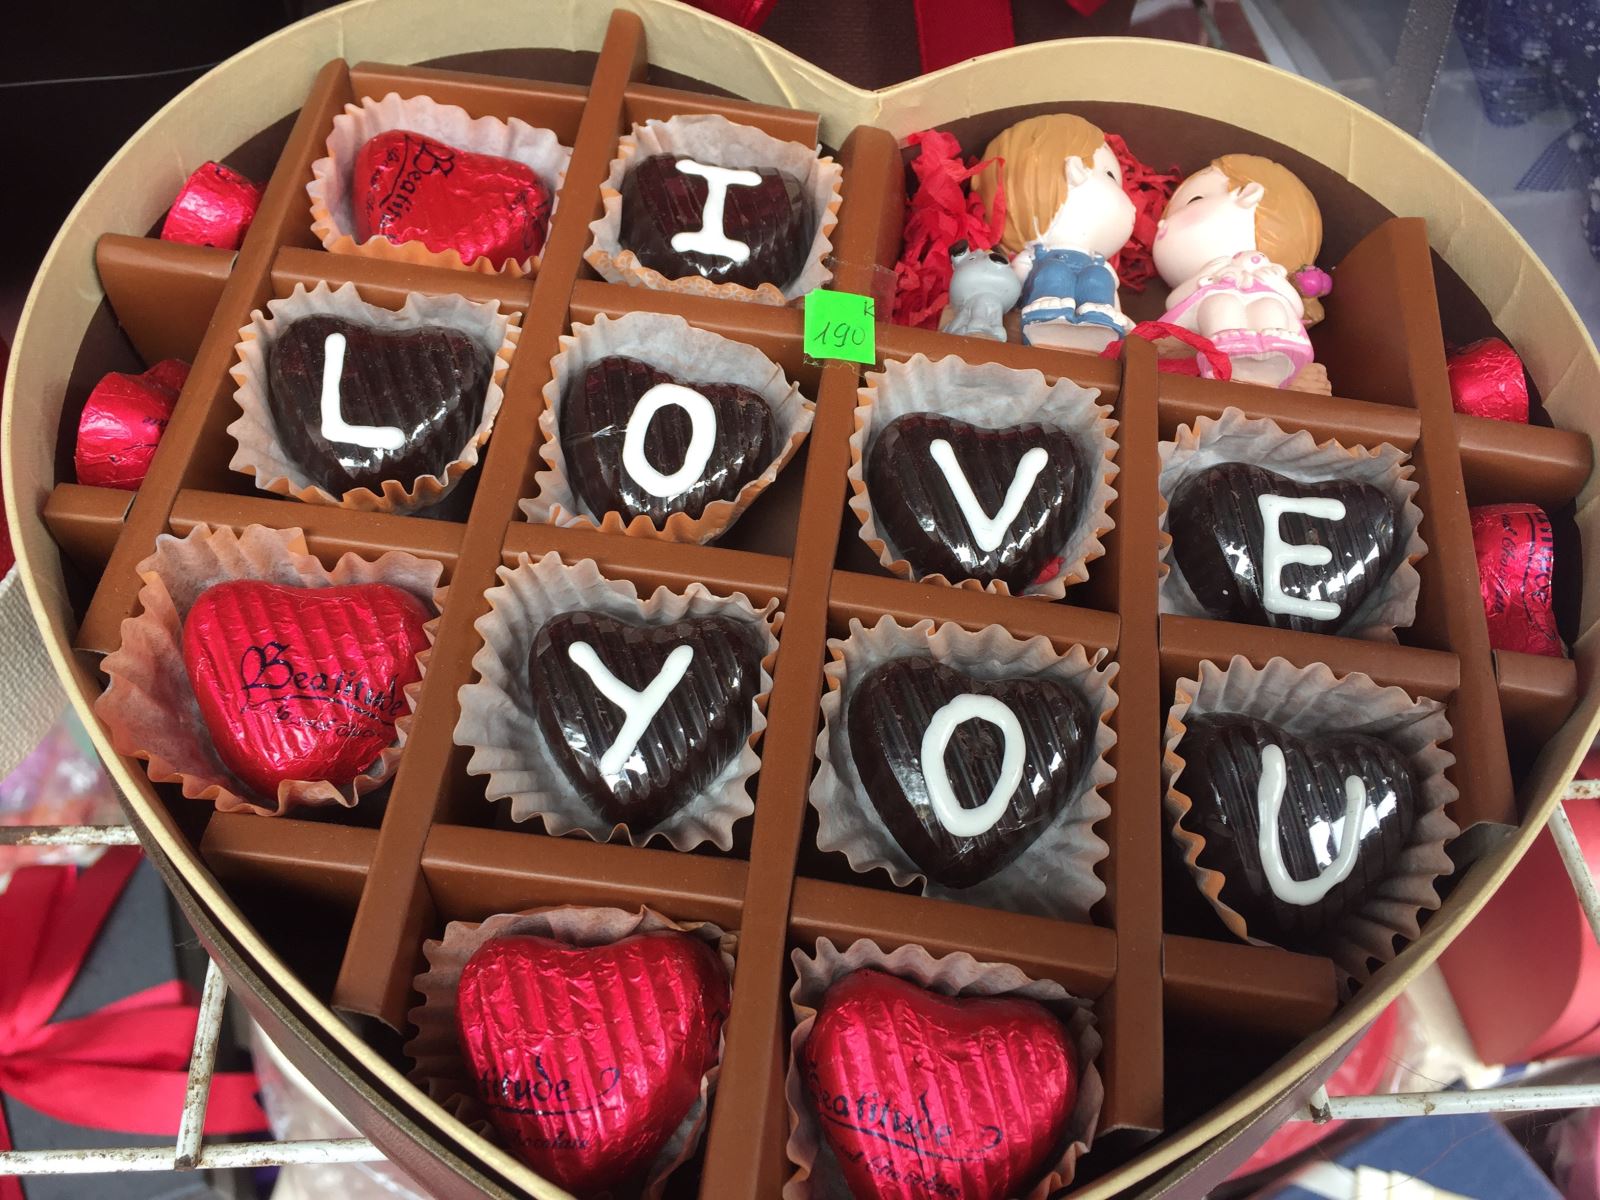 Tìm kiếm quà tặng độc đáo và ý nghĩa cho người yêu vào dịp Valentine năm nay? Socola Valentine là một lựa chọn hoàn hảo. Bộ sưu tập các sản phẩm socola Valentine đa dạng và phù hợp với mọi sở thích. Tuyệt đối là món quà thịnh soạn cho người tình của bạn.